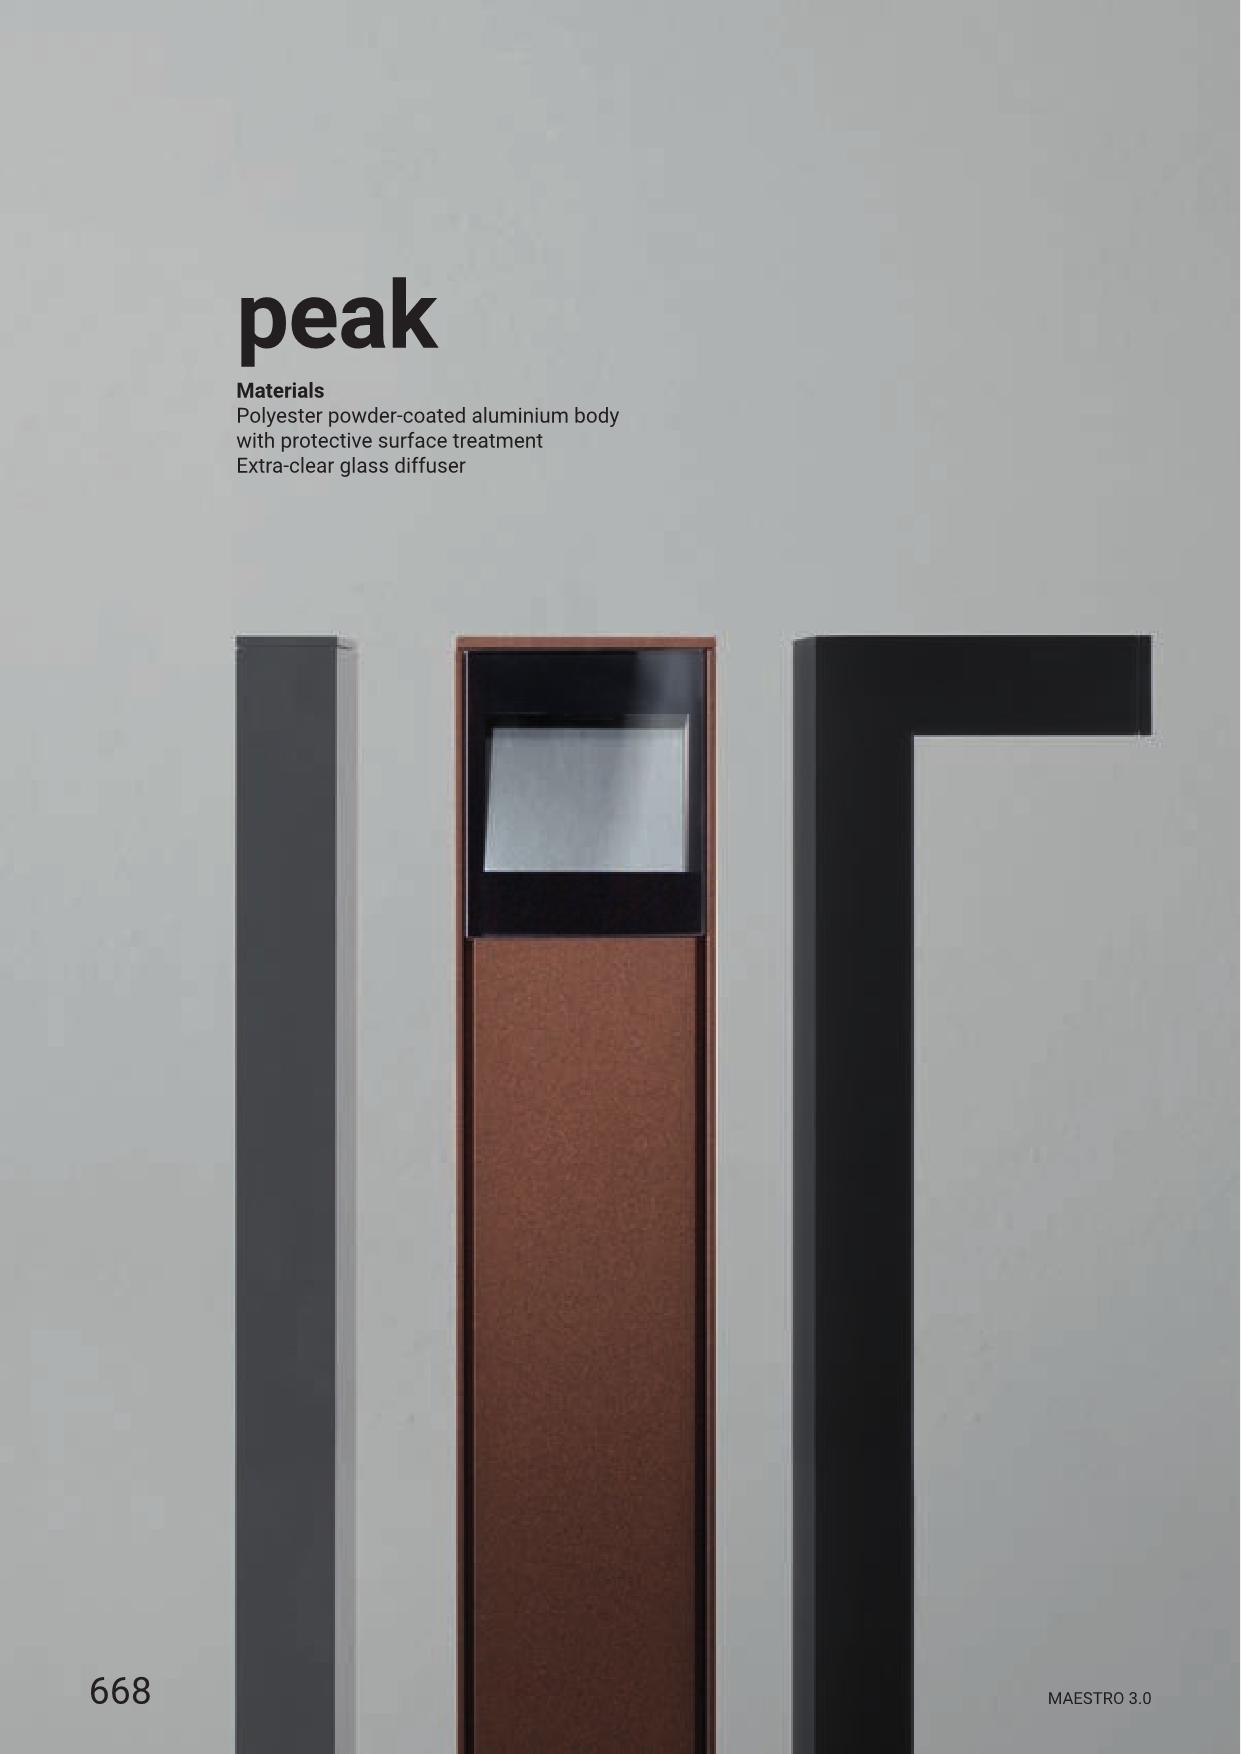 Linea Light – Peak